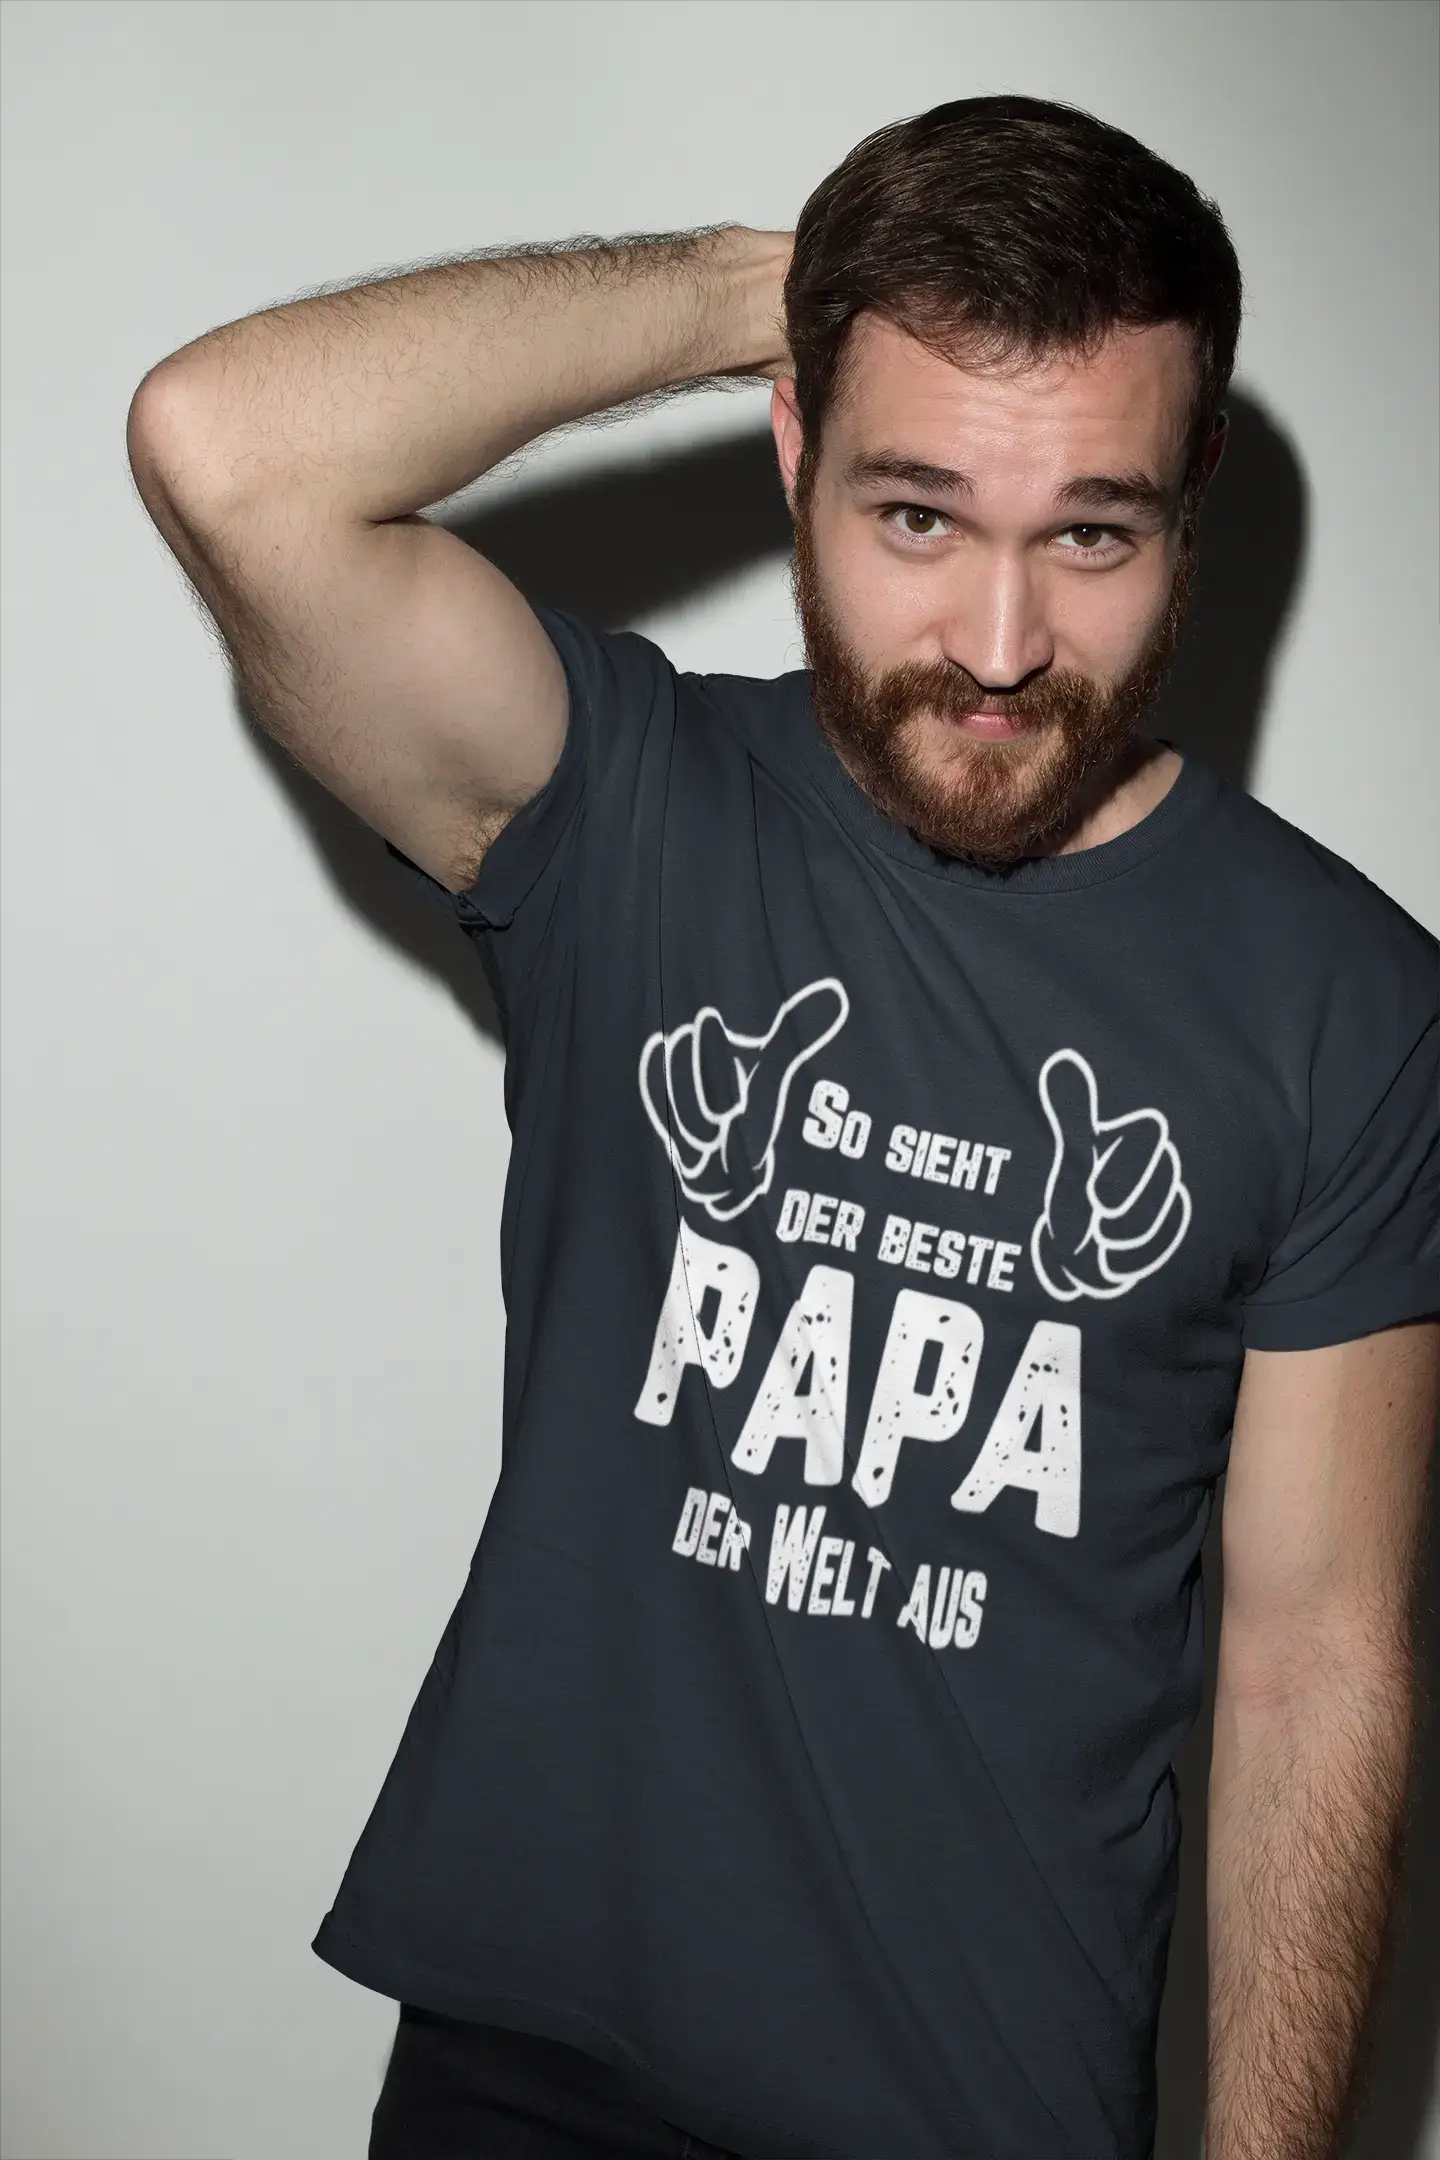 Men's Graphic T-Shirt So Sieht Der Beste Papa Der Welt Aus Gift Idea